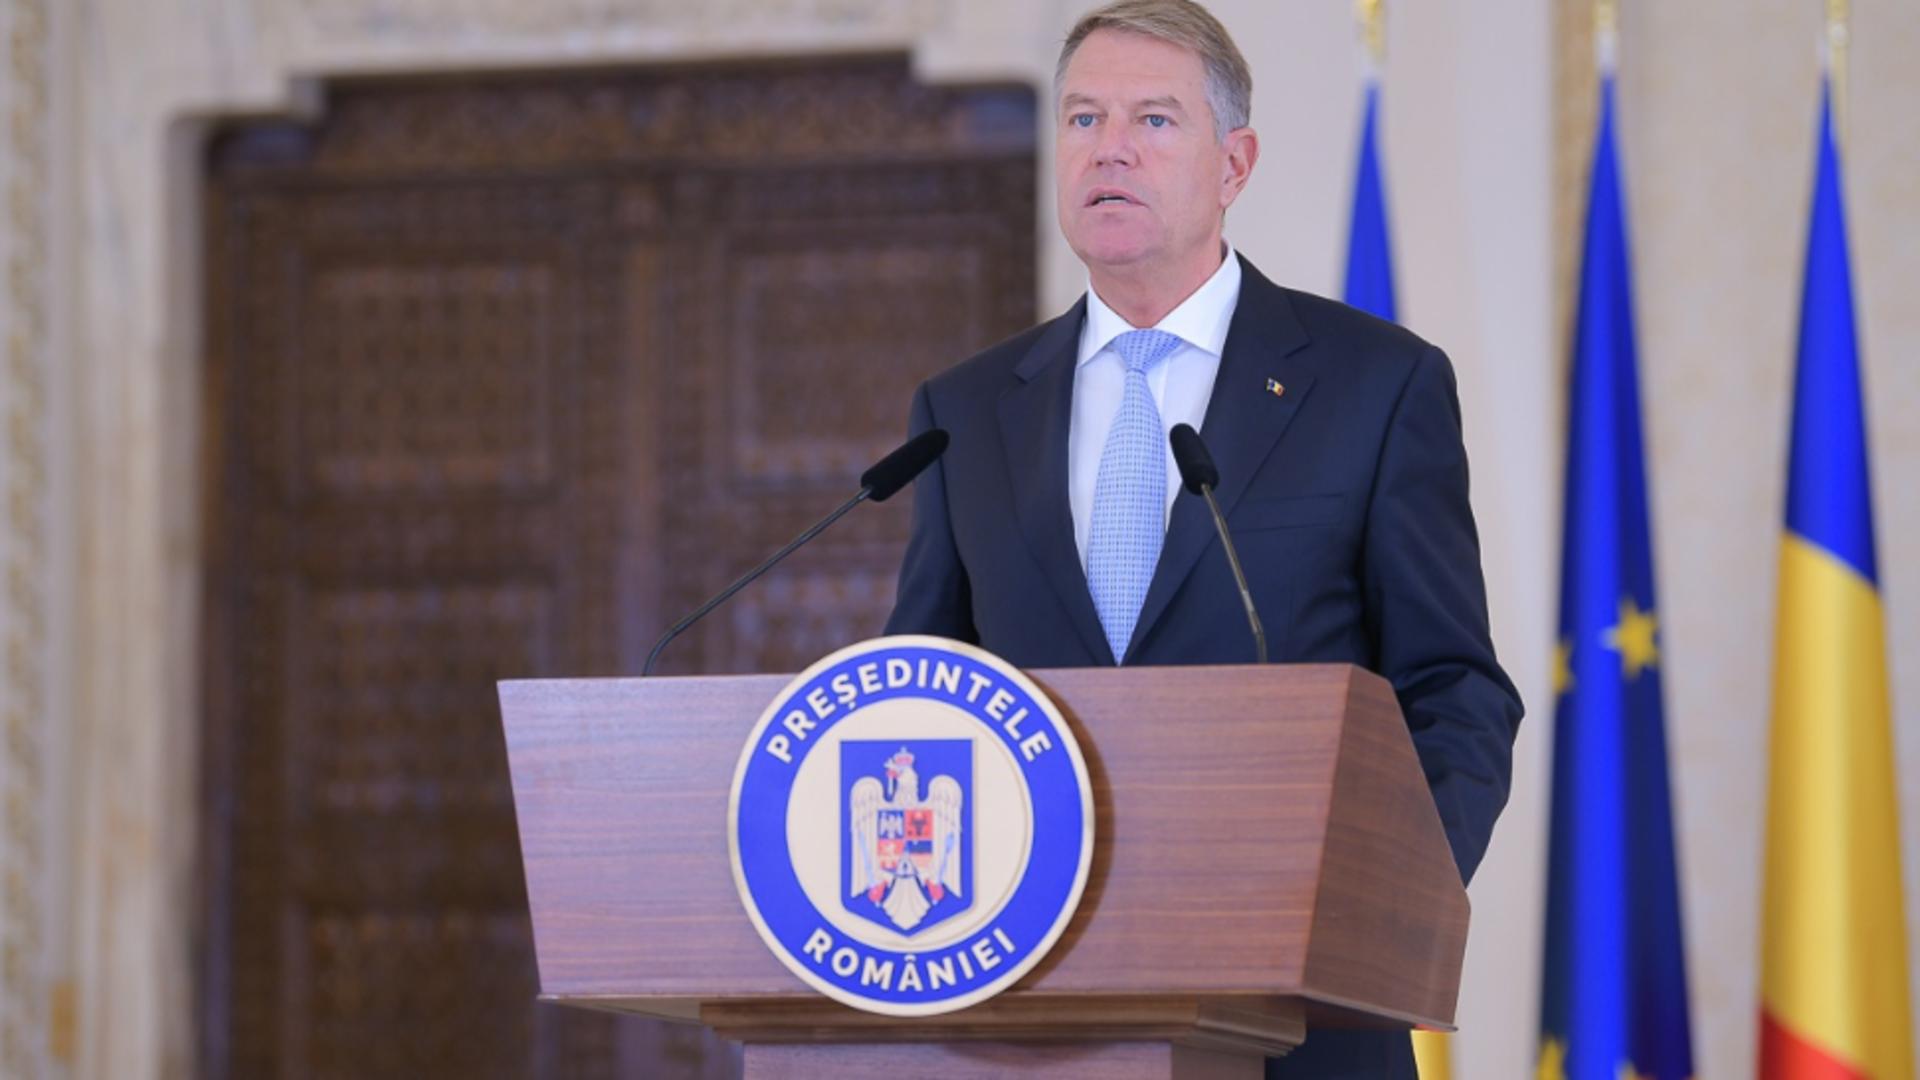 Klaus Iohannis, președintele României